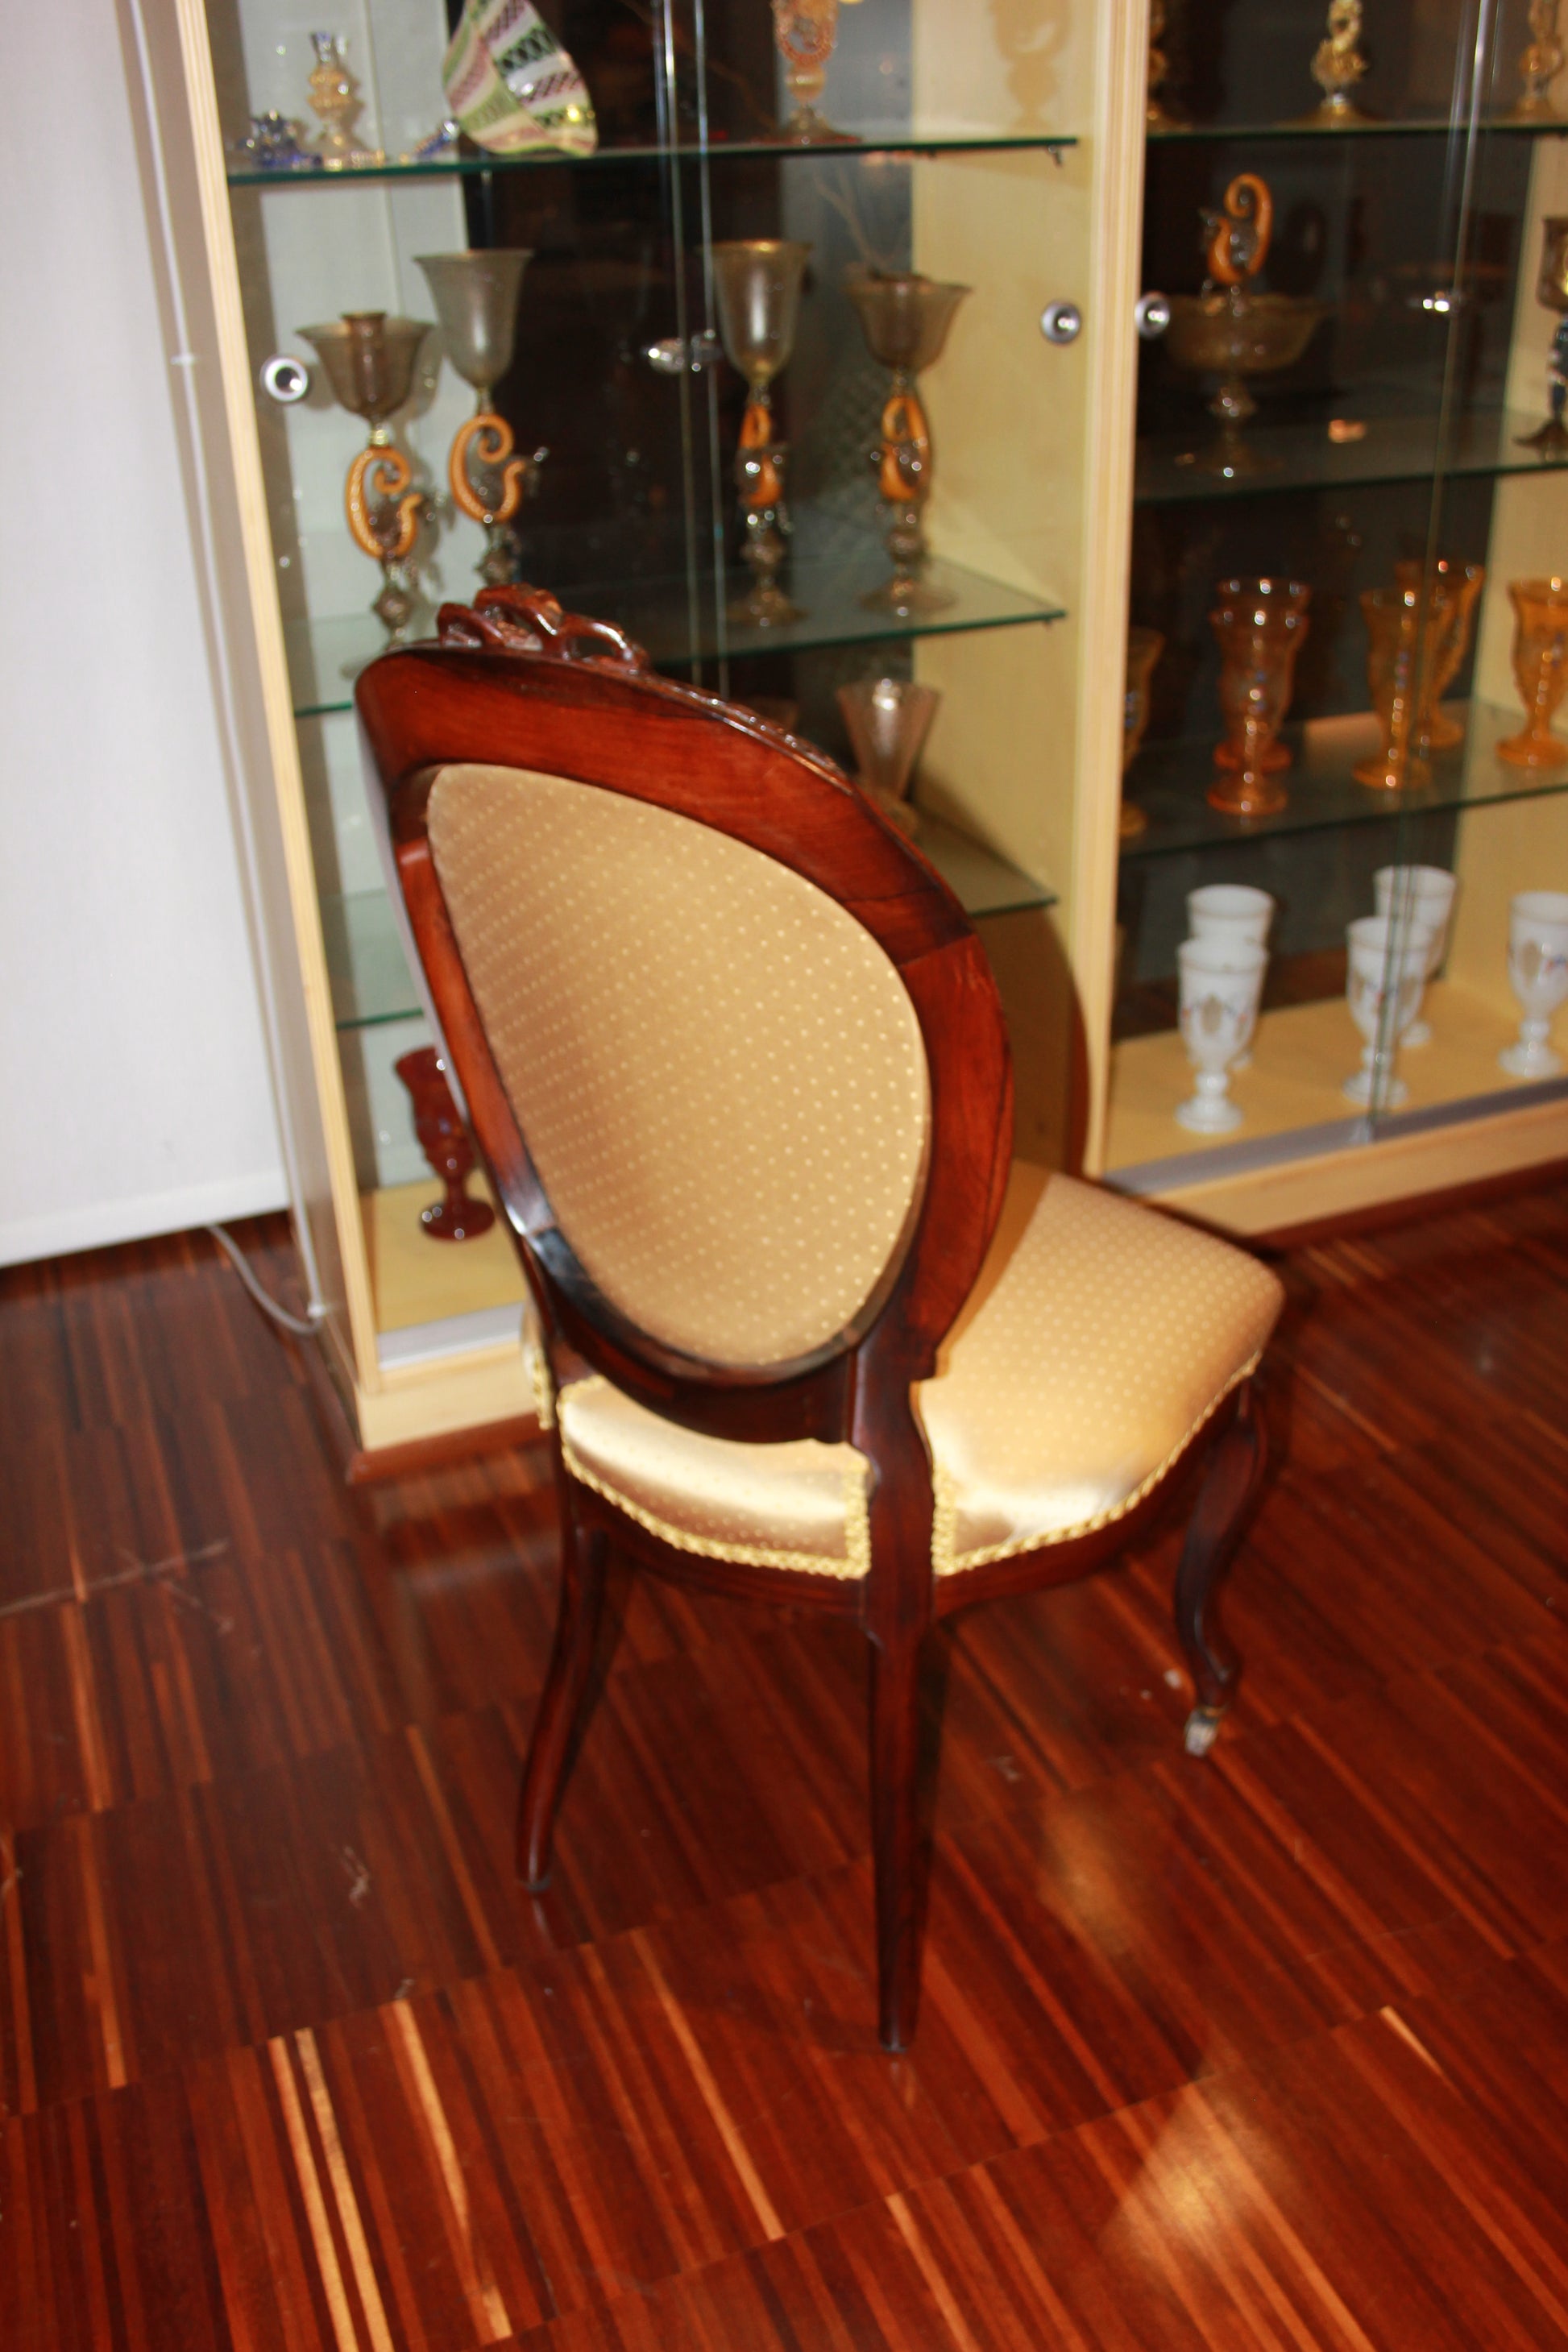 Gruppo di 6 sedie francesi stile Luigi Filippo con schienale impreziosito da cimasa intagliata